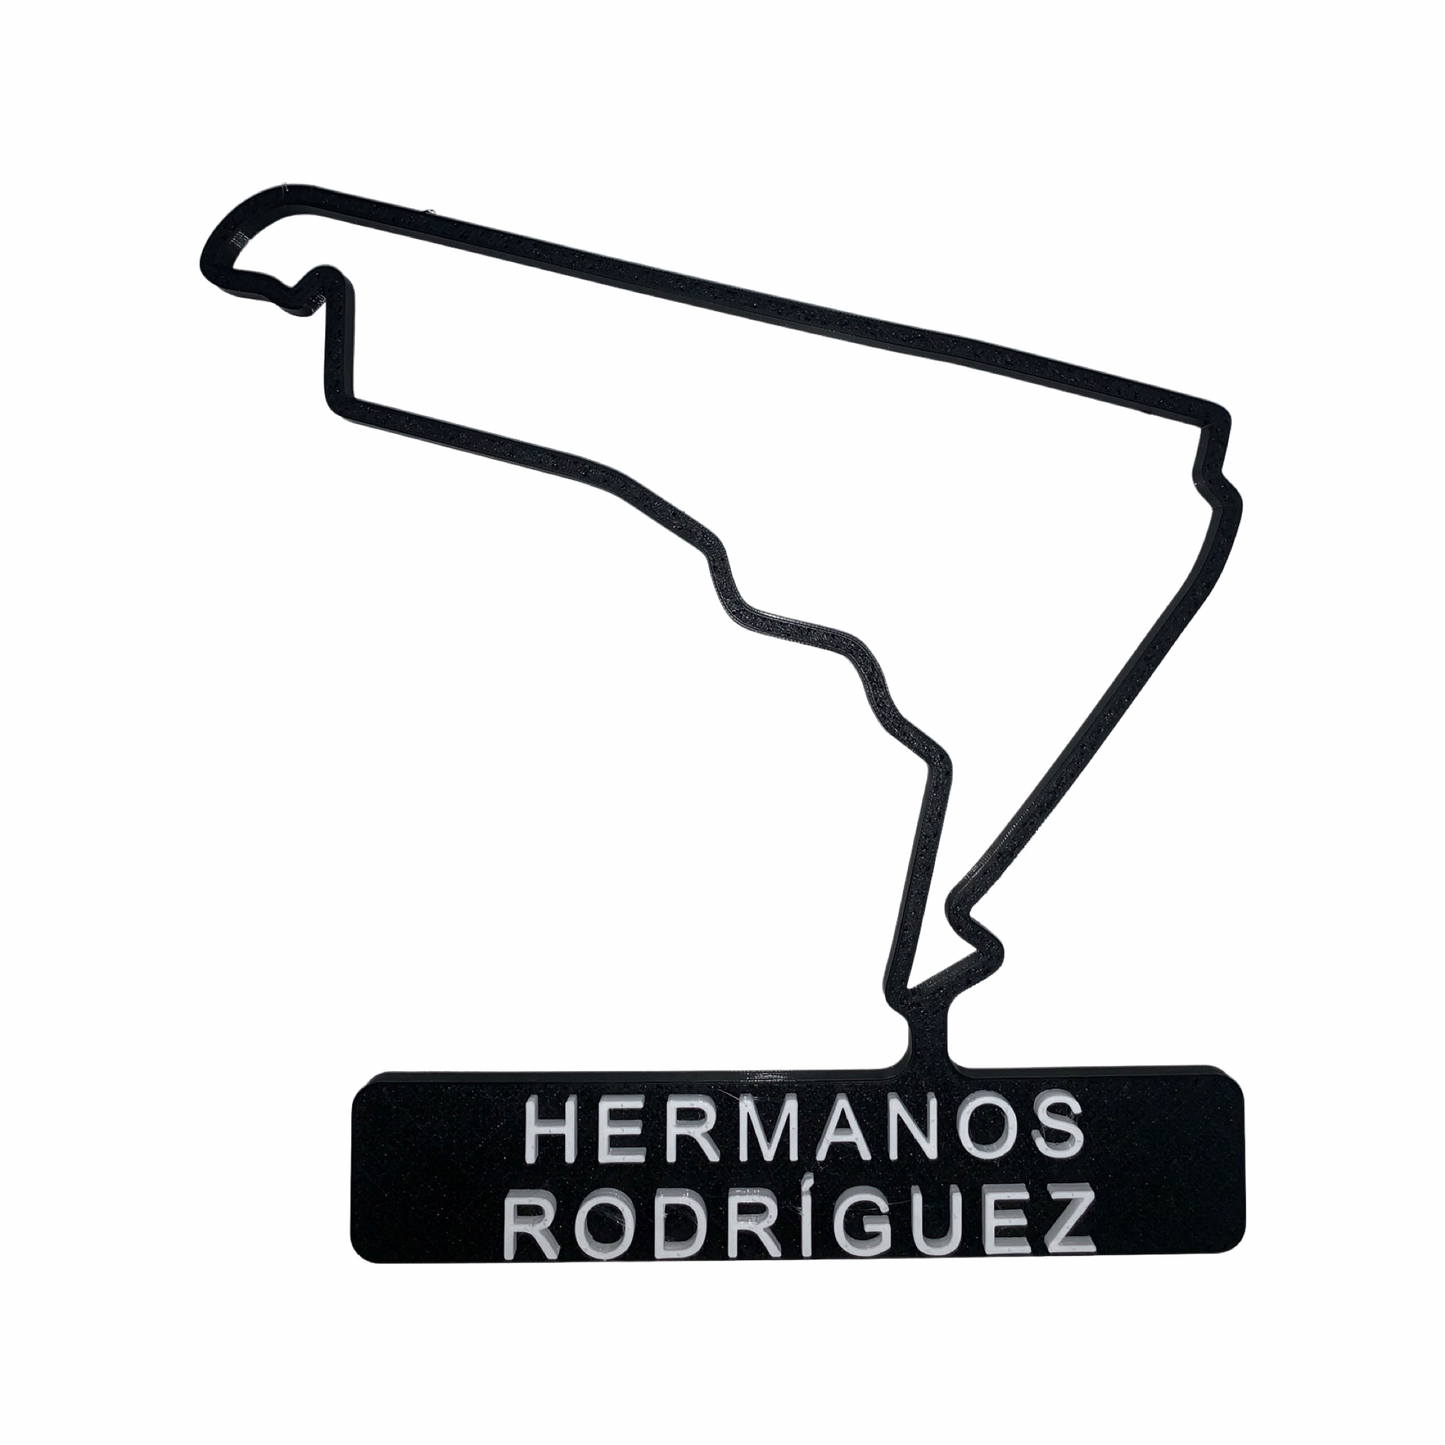 3D-gedruckte F1-Strecken Saison 2021 – Hermanos Rodríguez